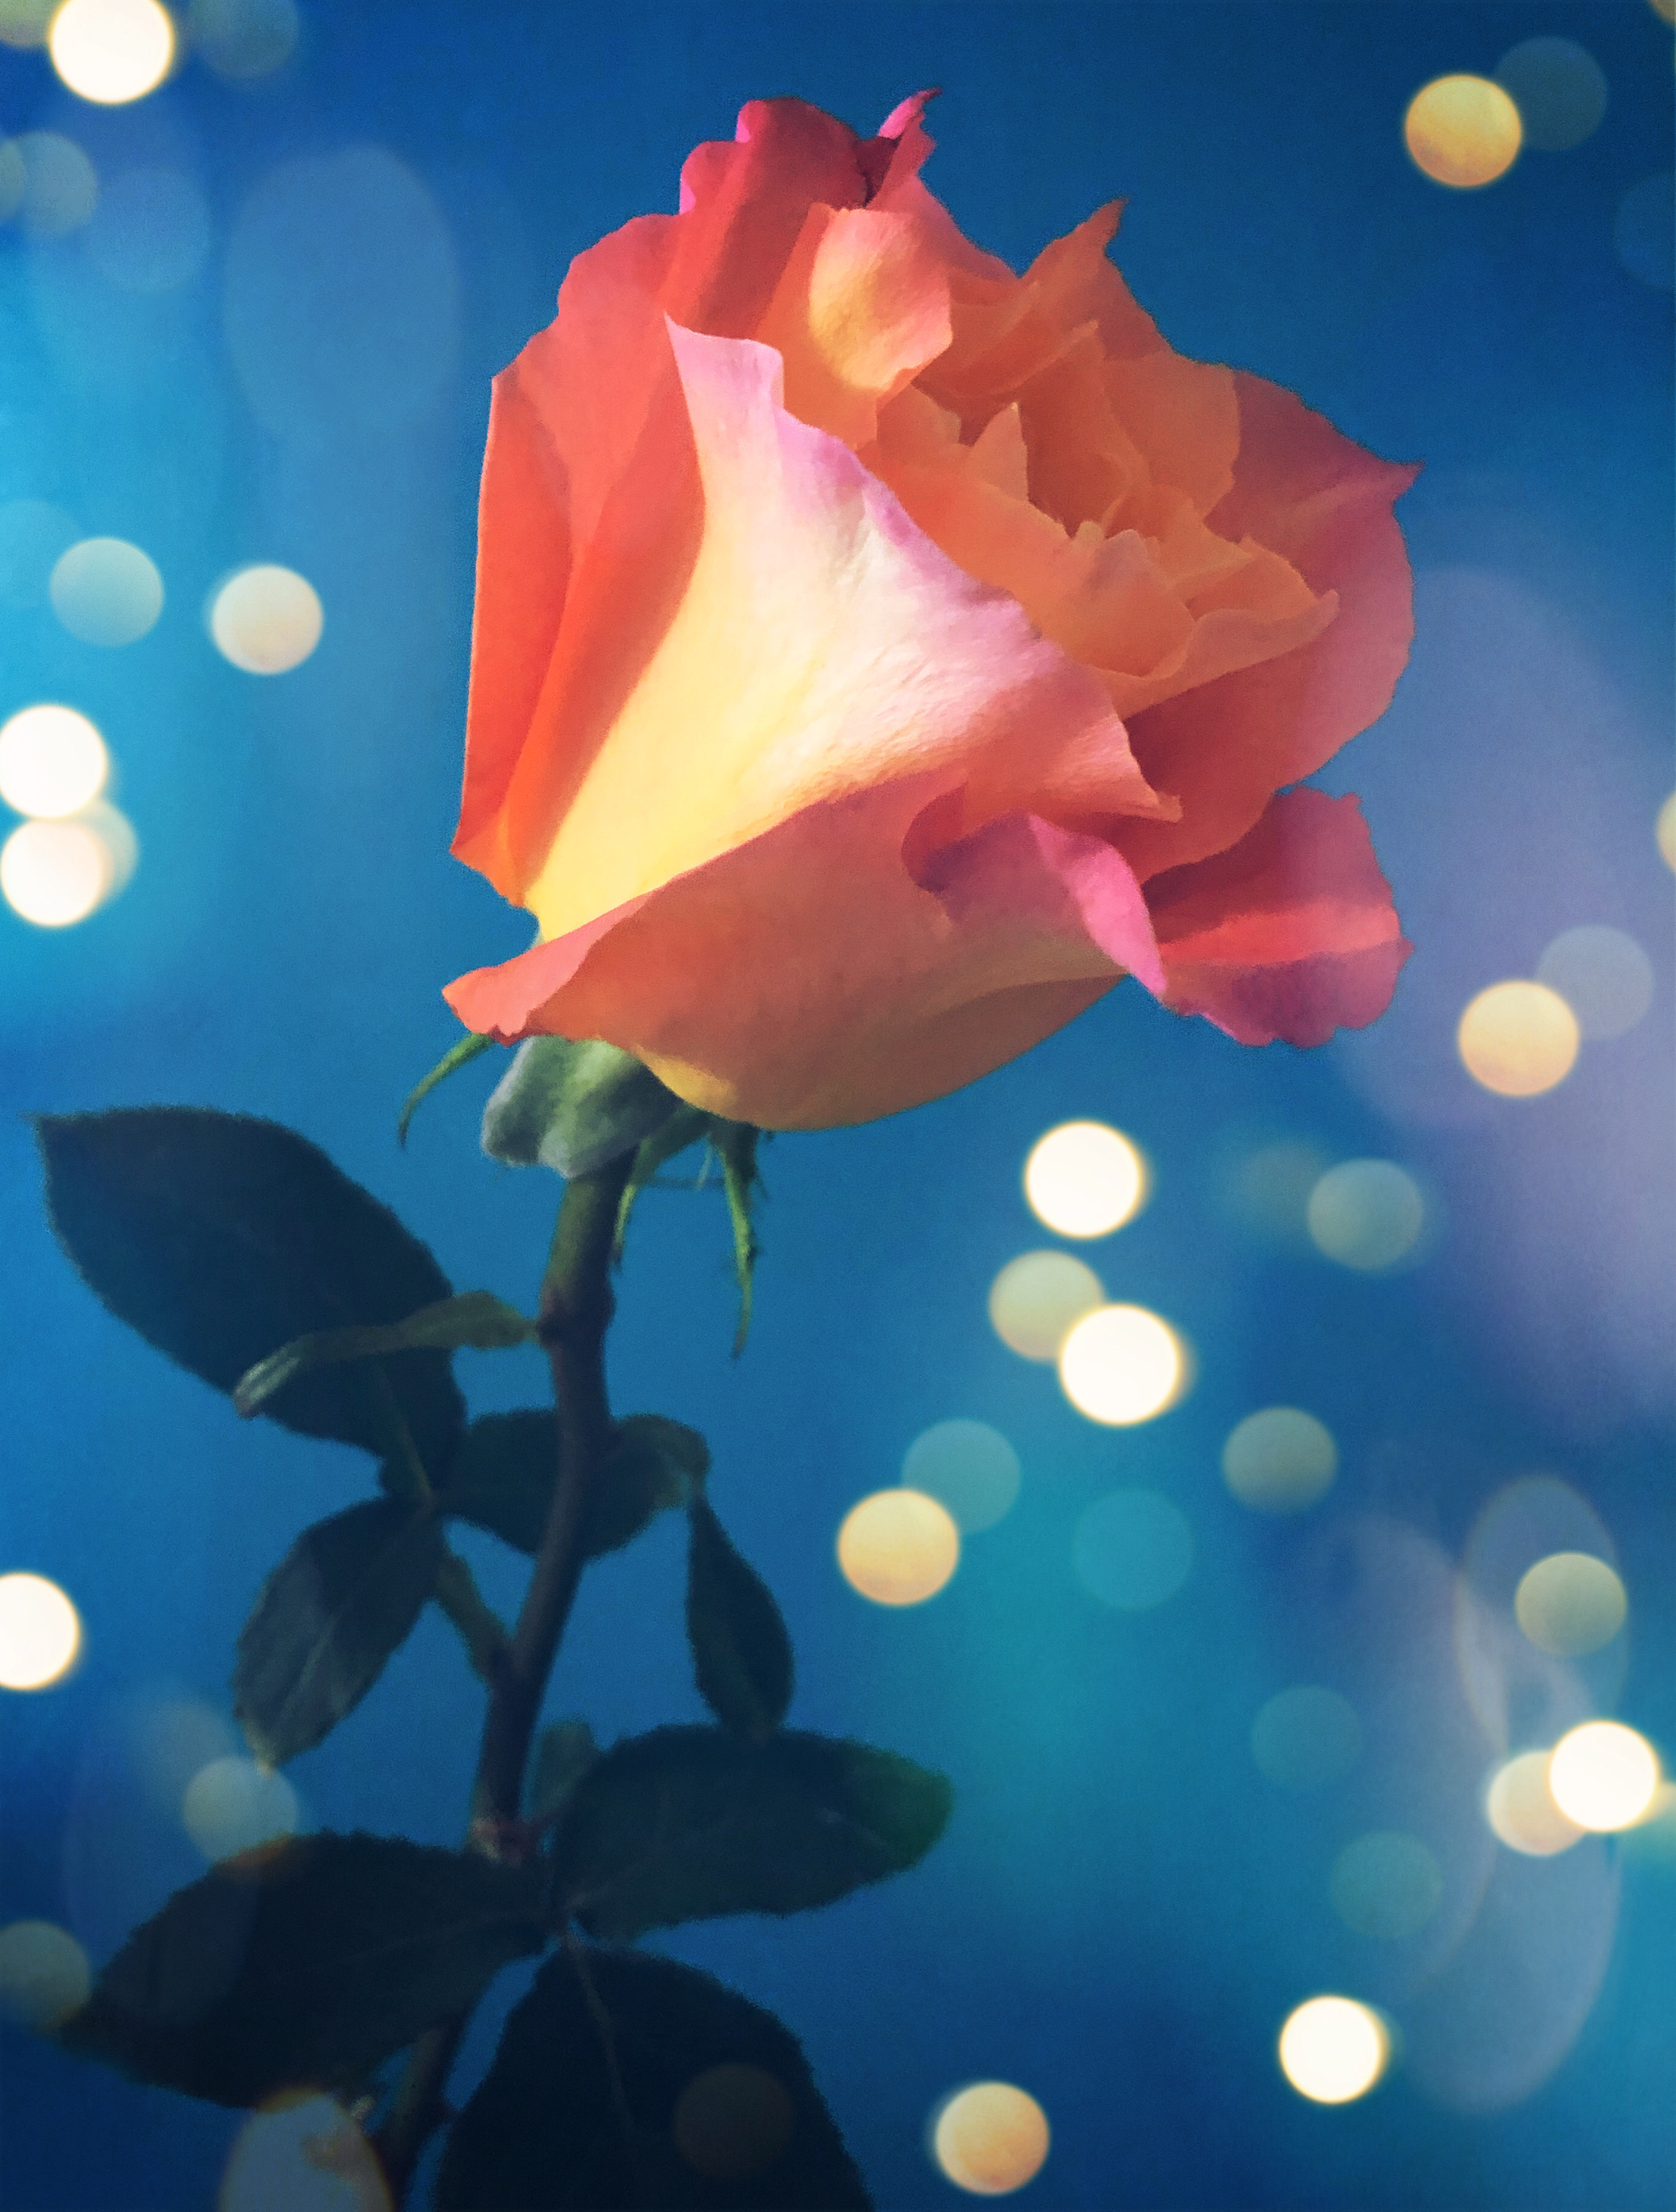 🧡 #rose #flower #flowerphotography #bokeh #bokeheffect #orangerose #beautiful #dream